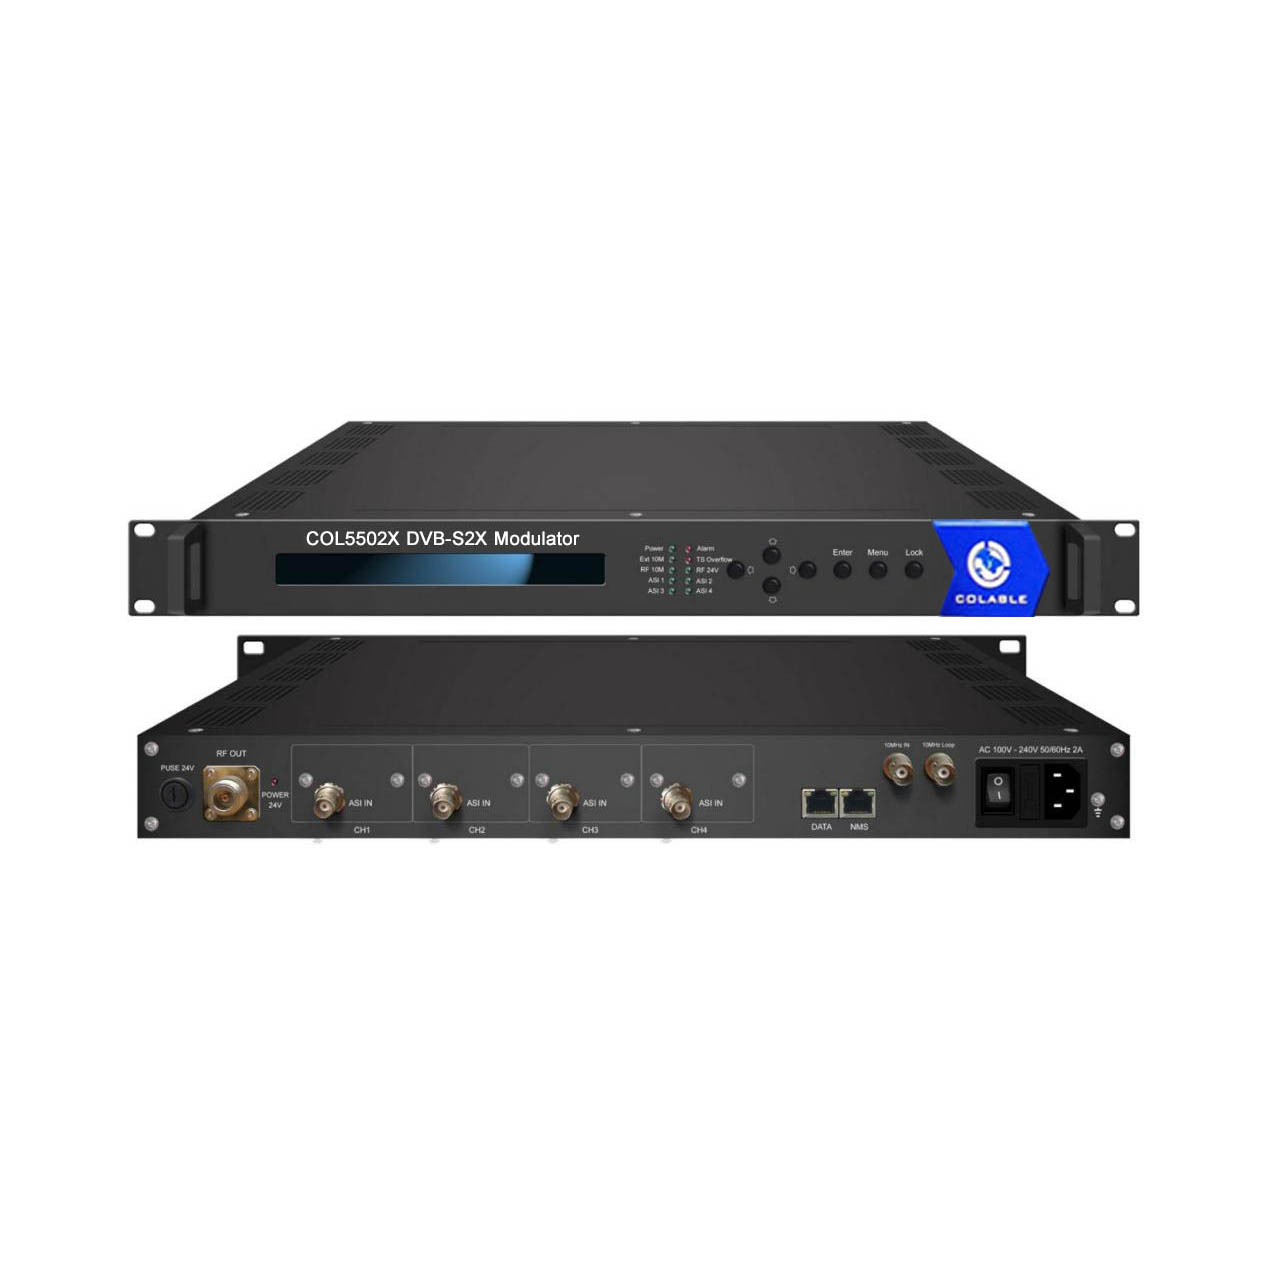 Analog Frequency Modulation QPSK 8PSK APSK DVB-S/S2X Modulator COL5502X – Colable